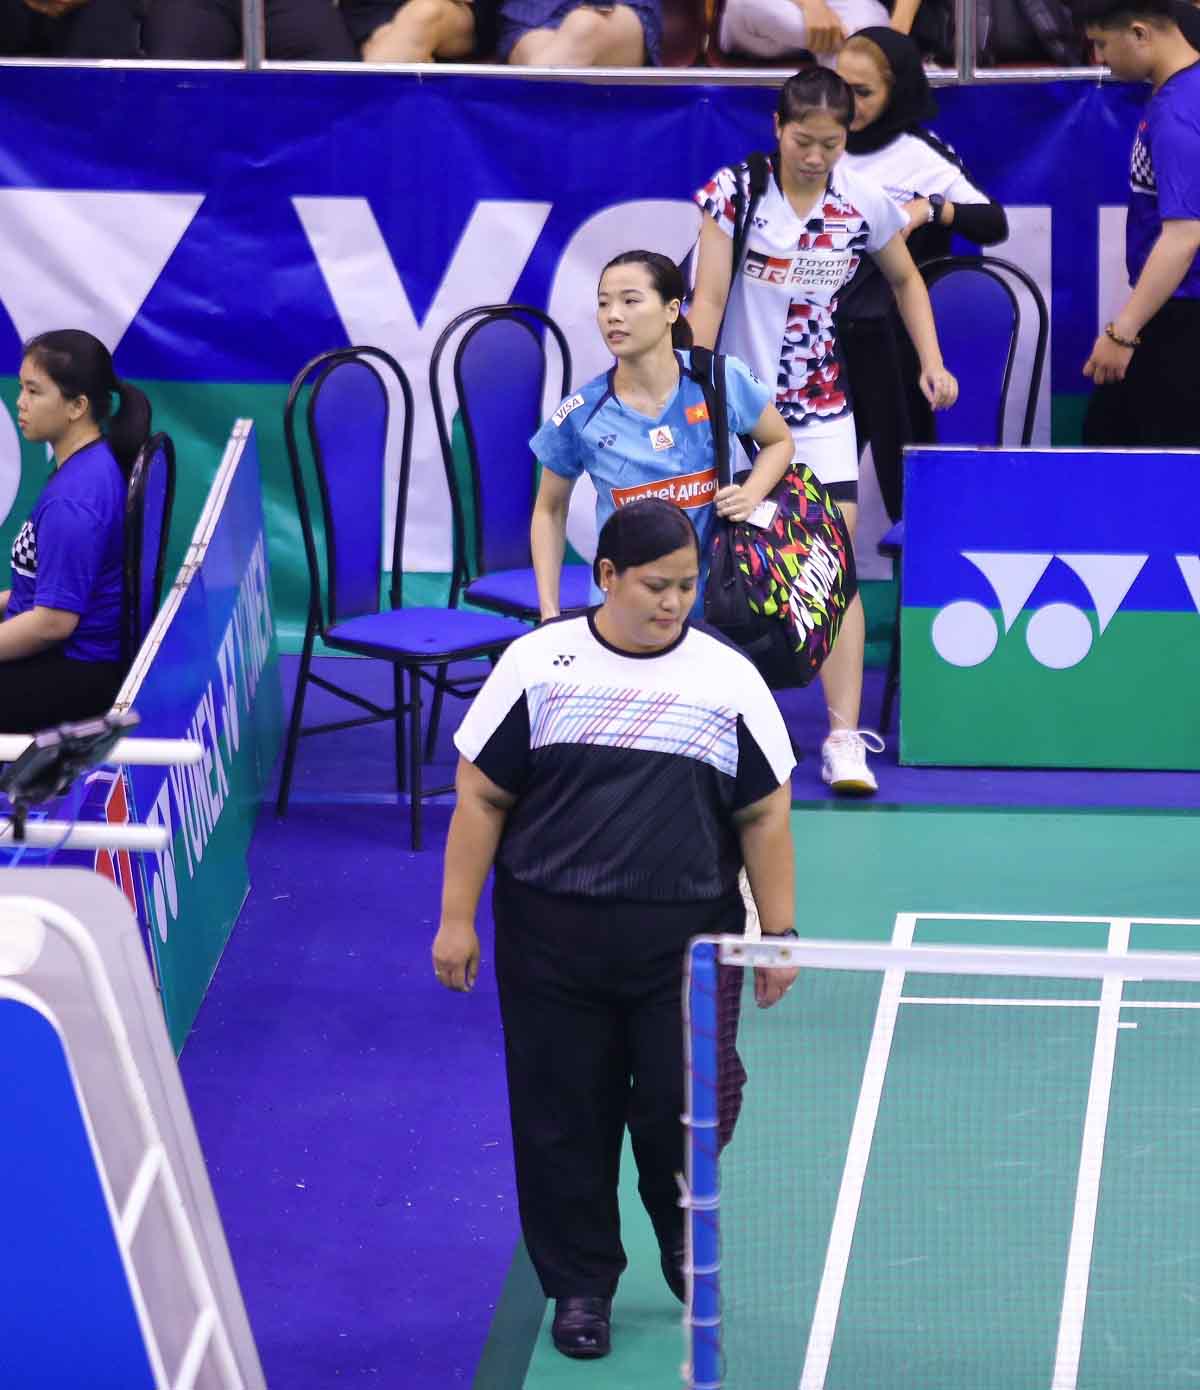 Nguyễn Thùy Linh (hạng 27 thế giới) là đại diện duy nhất của nước chủ nhà góp mặt ở tứ kết giải cầu lông Vietnam Open 2023. Đối thủ của Thuỳ Linh ở tứ kết là tay vợt người Thái Lan Choeikeewong Pornpicha (hạng 64 thế giới).